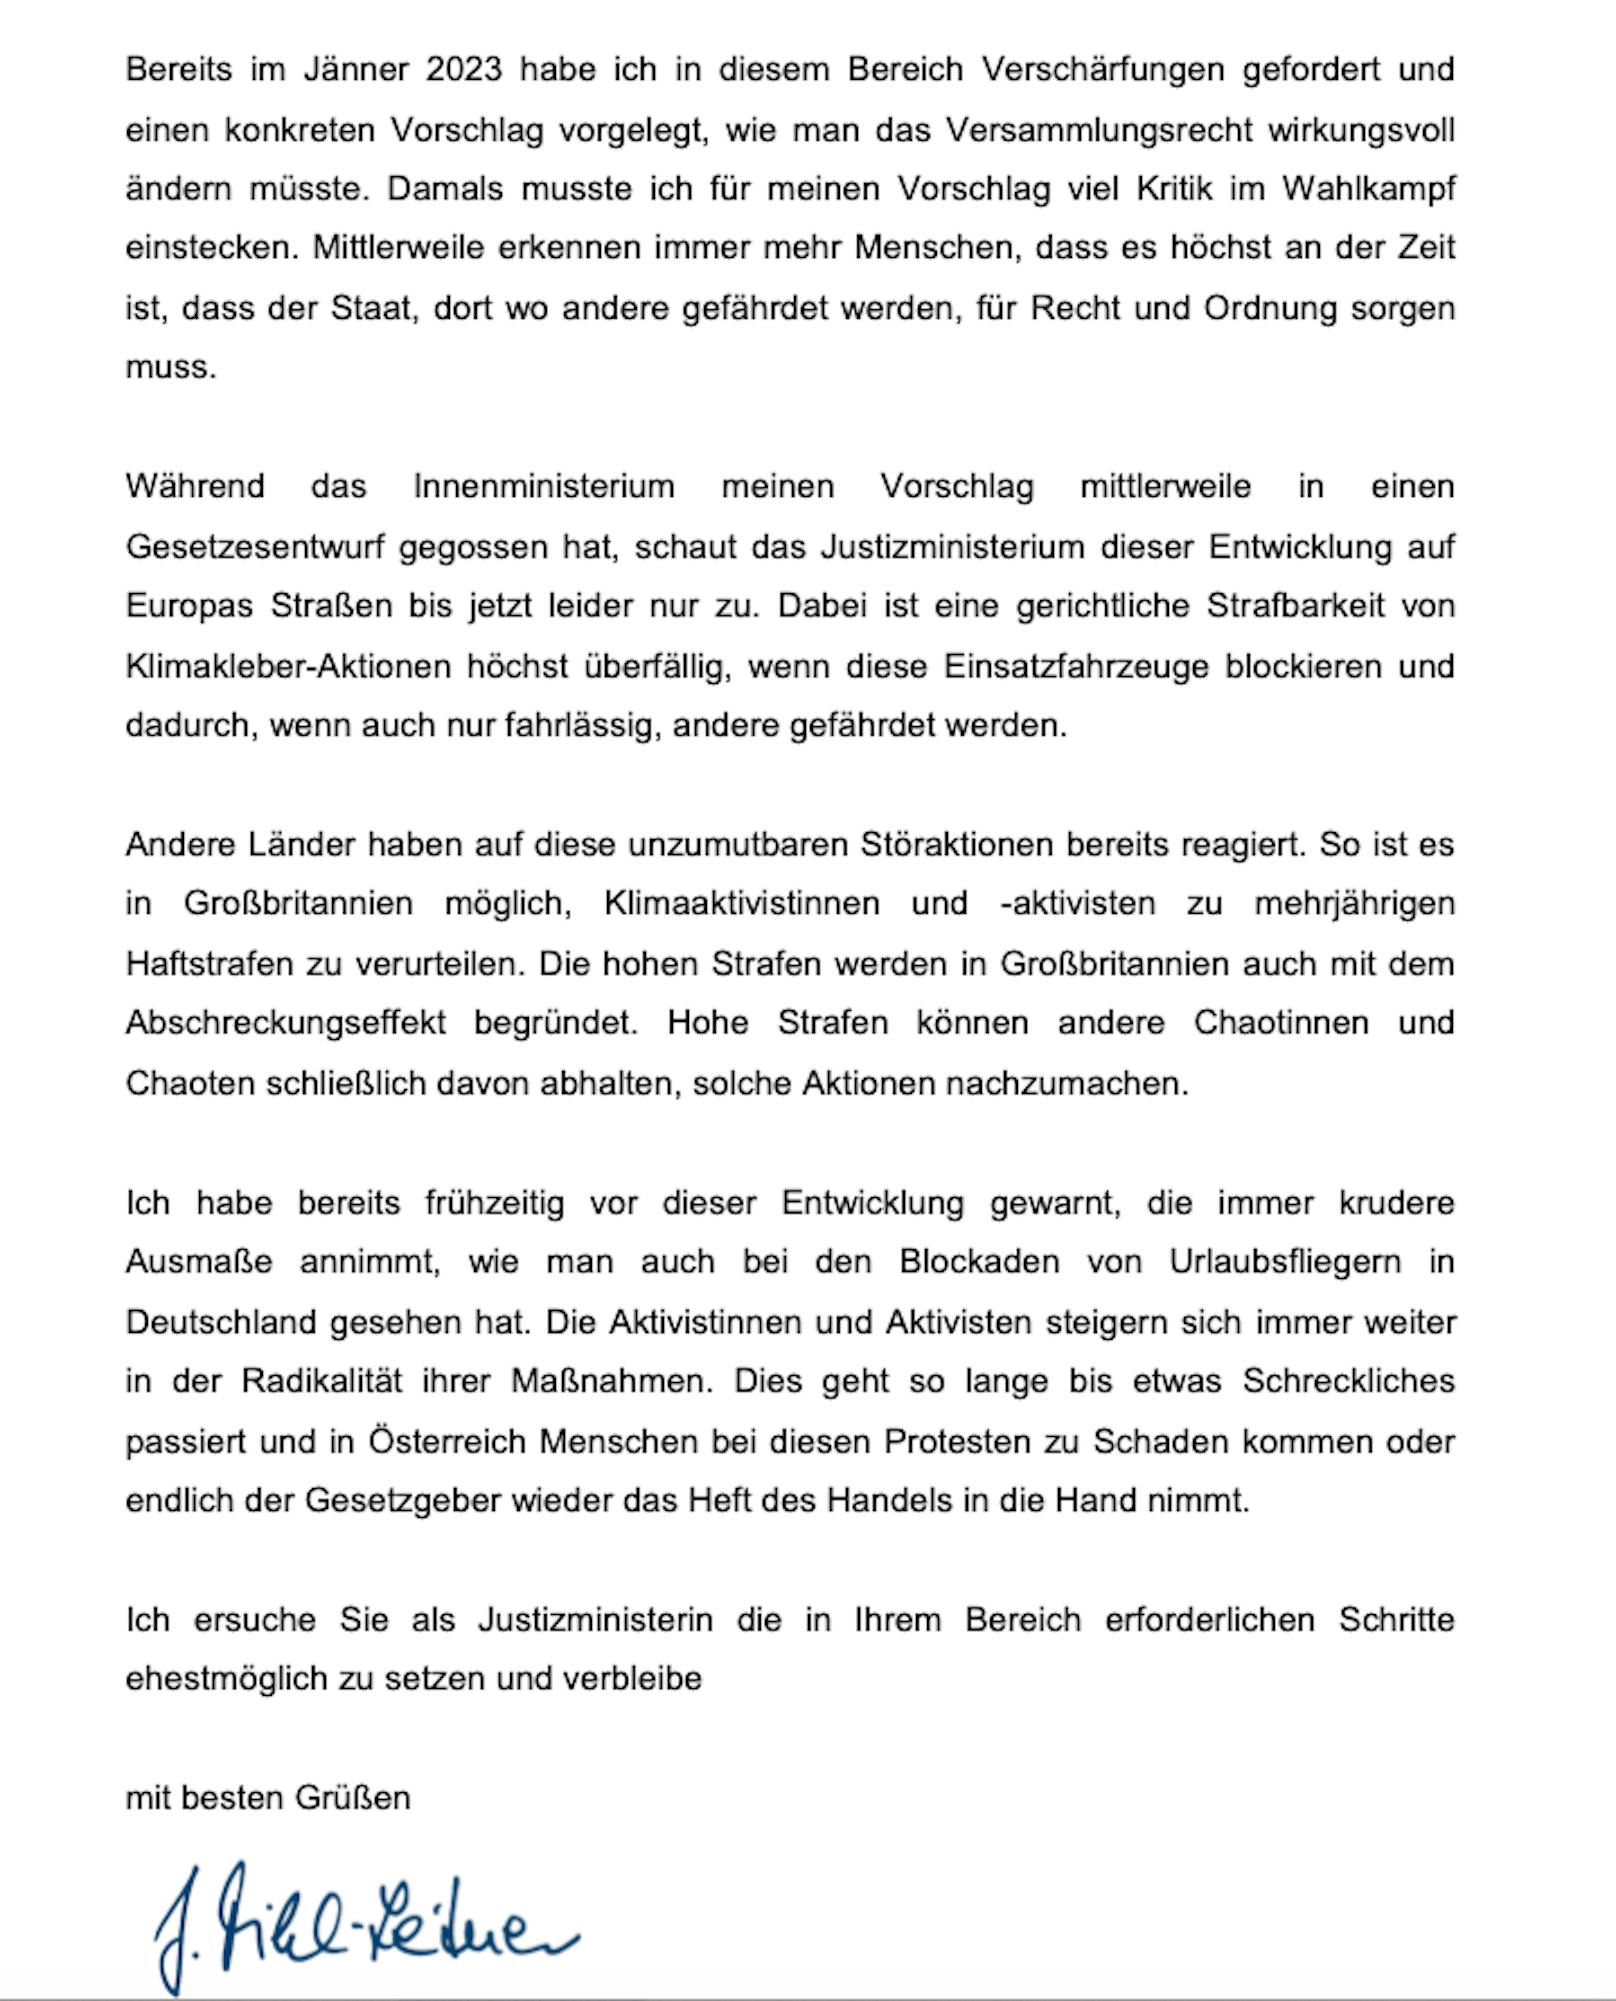 Der Brief der VPNÖ-Chefin im Wortlaut, 2. Seite